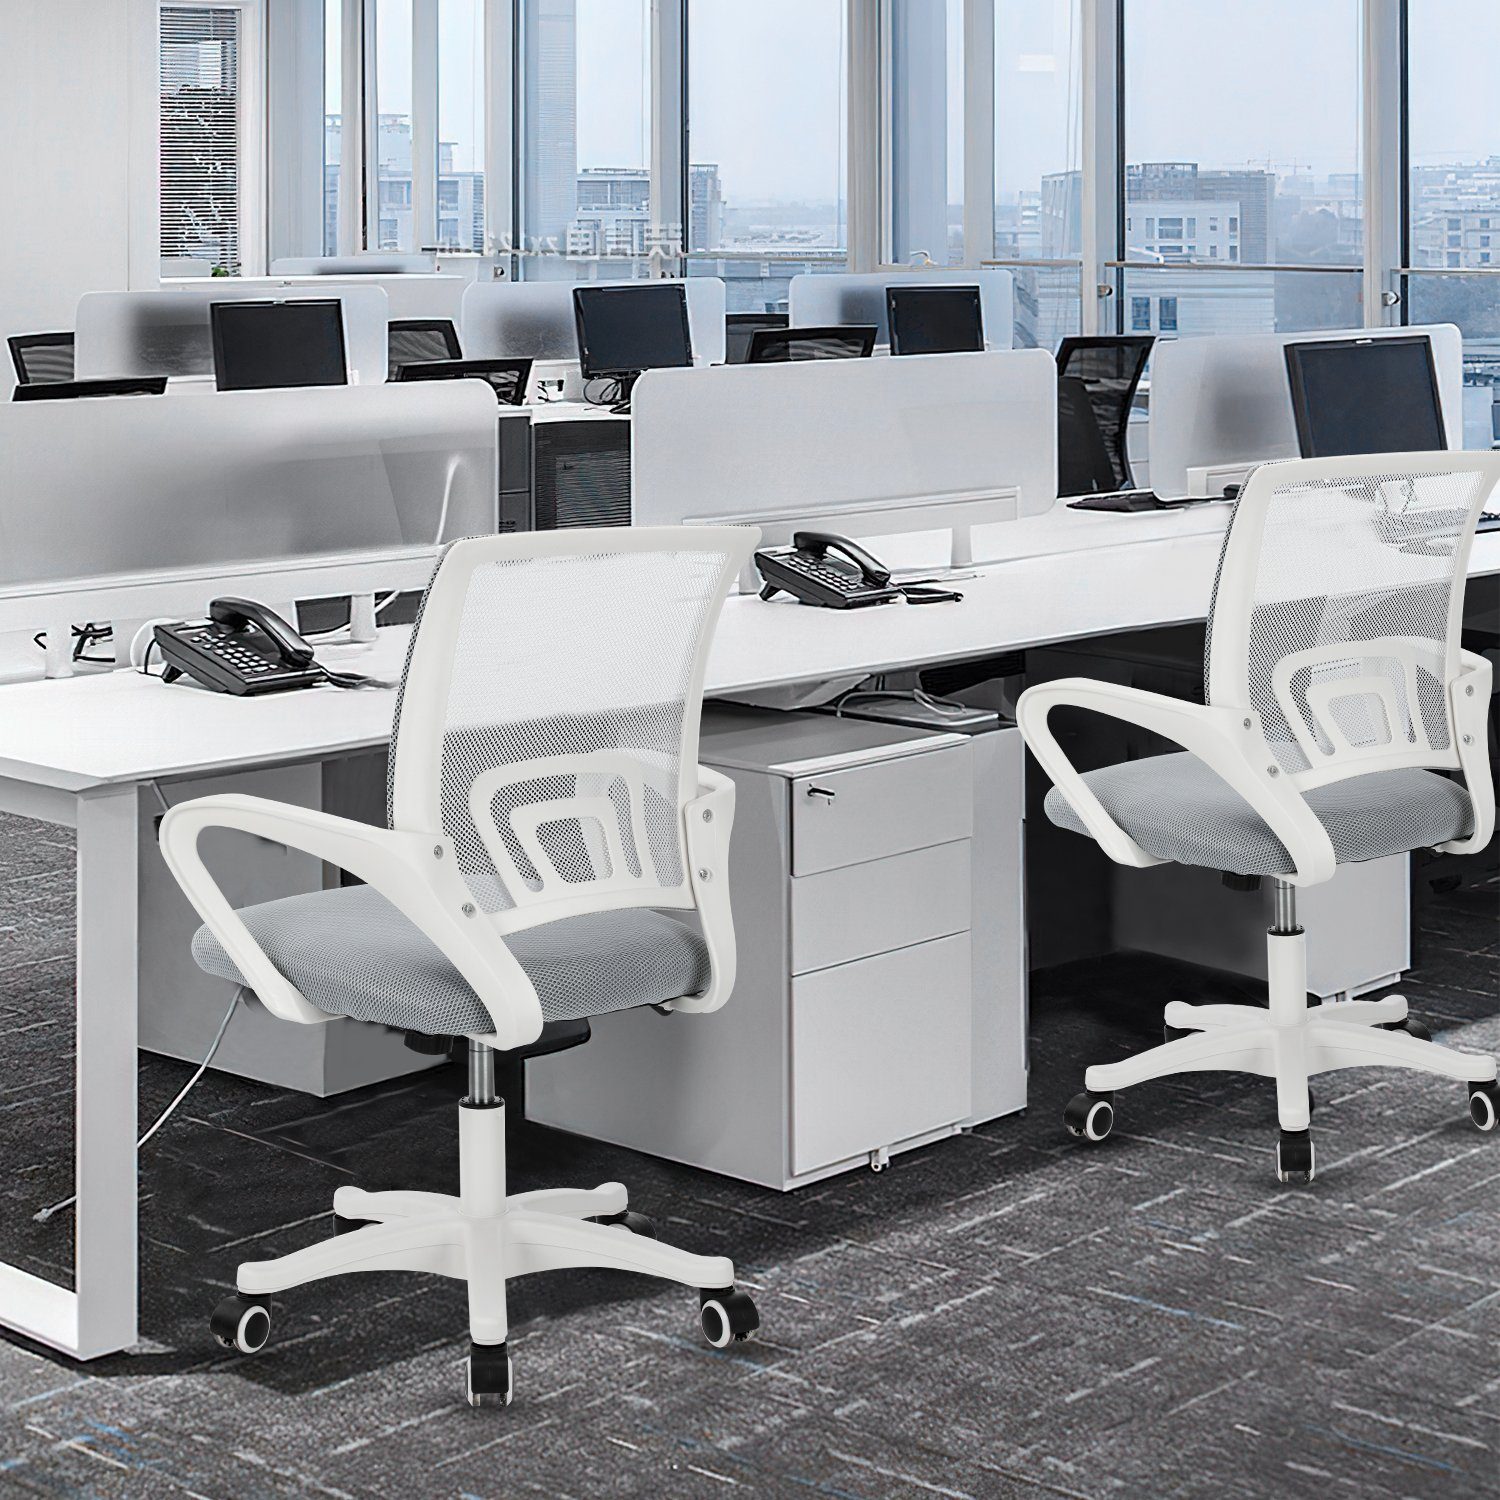 Drehstuhl, Arbeitszimmer Bürostuhl, Büro, mit 360° atmungsaktiv, Schreibtischstuhl Schreibtischstuhl höhenverstellbarer, Wippfunktion, Wippfunktion, iscooter